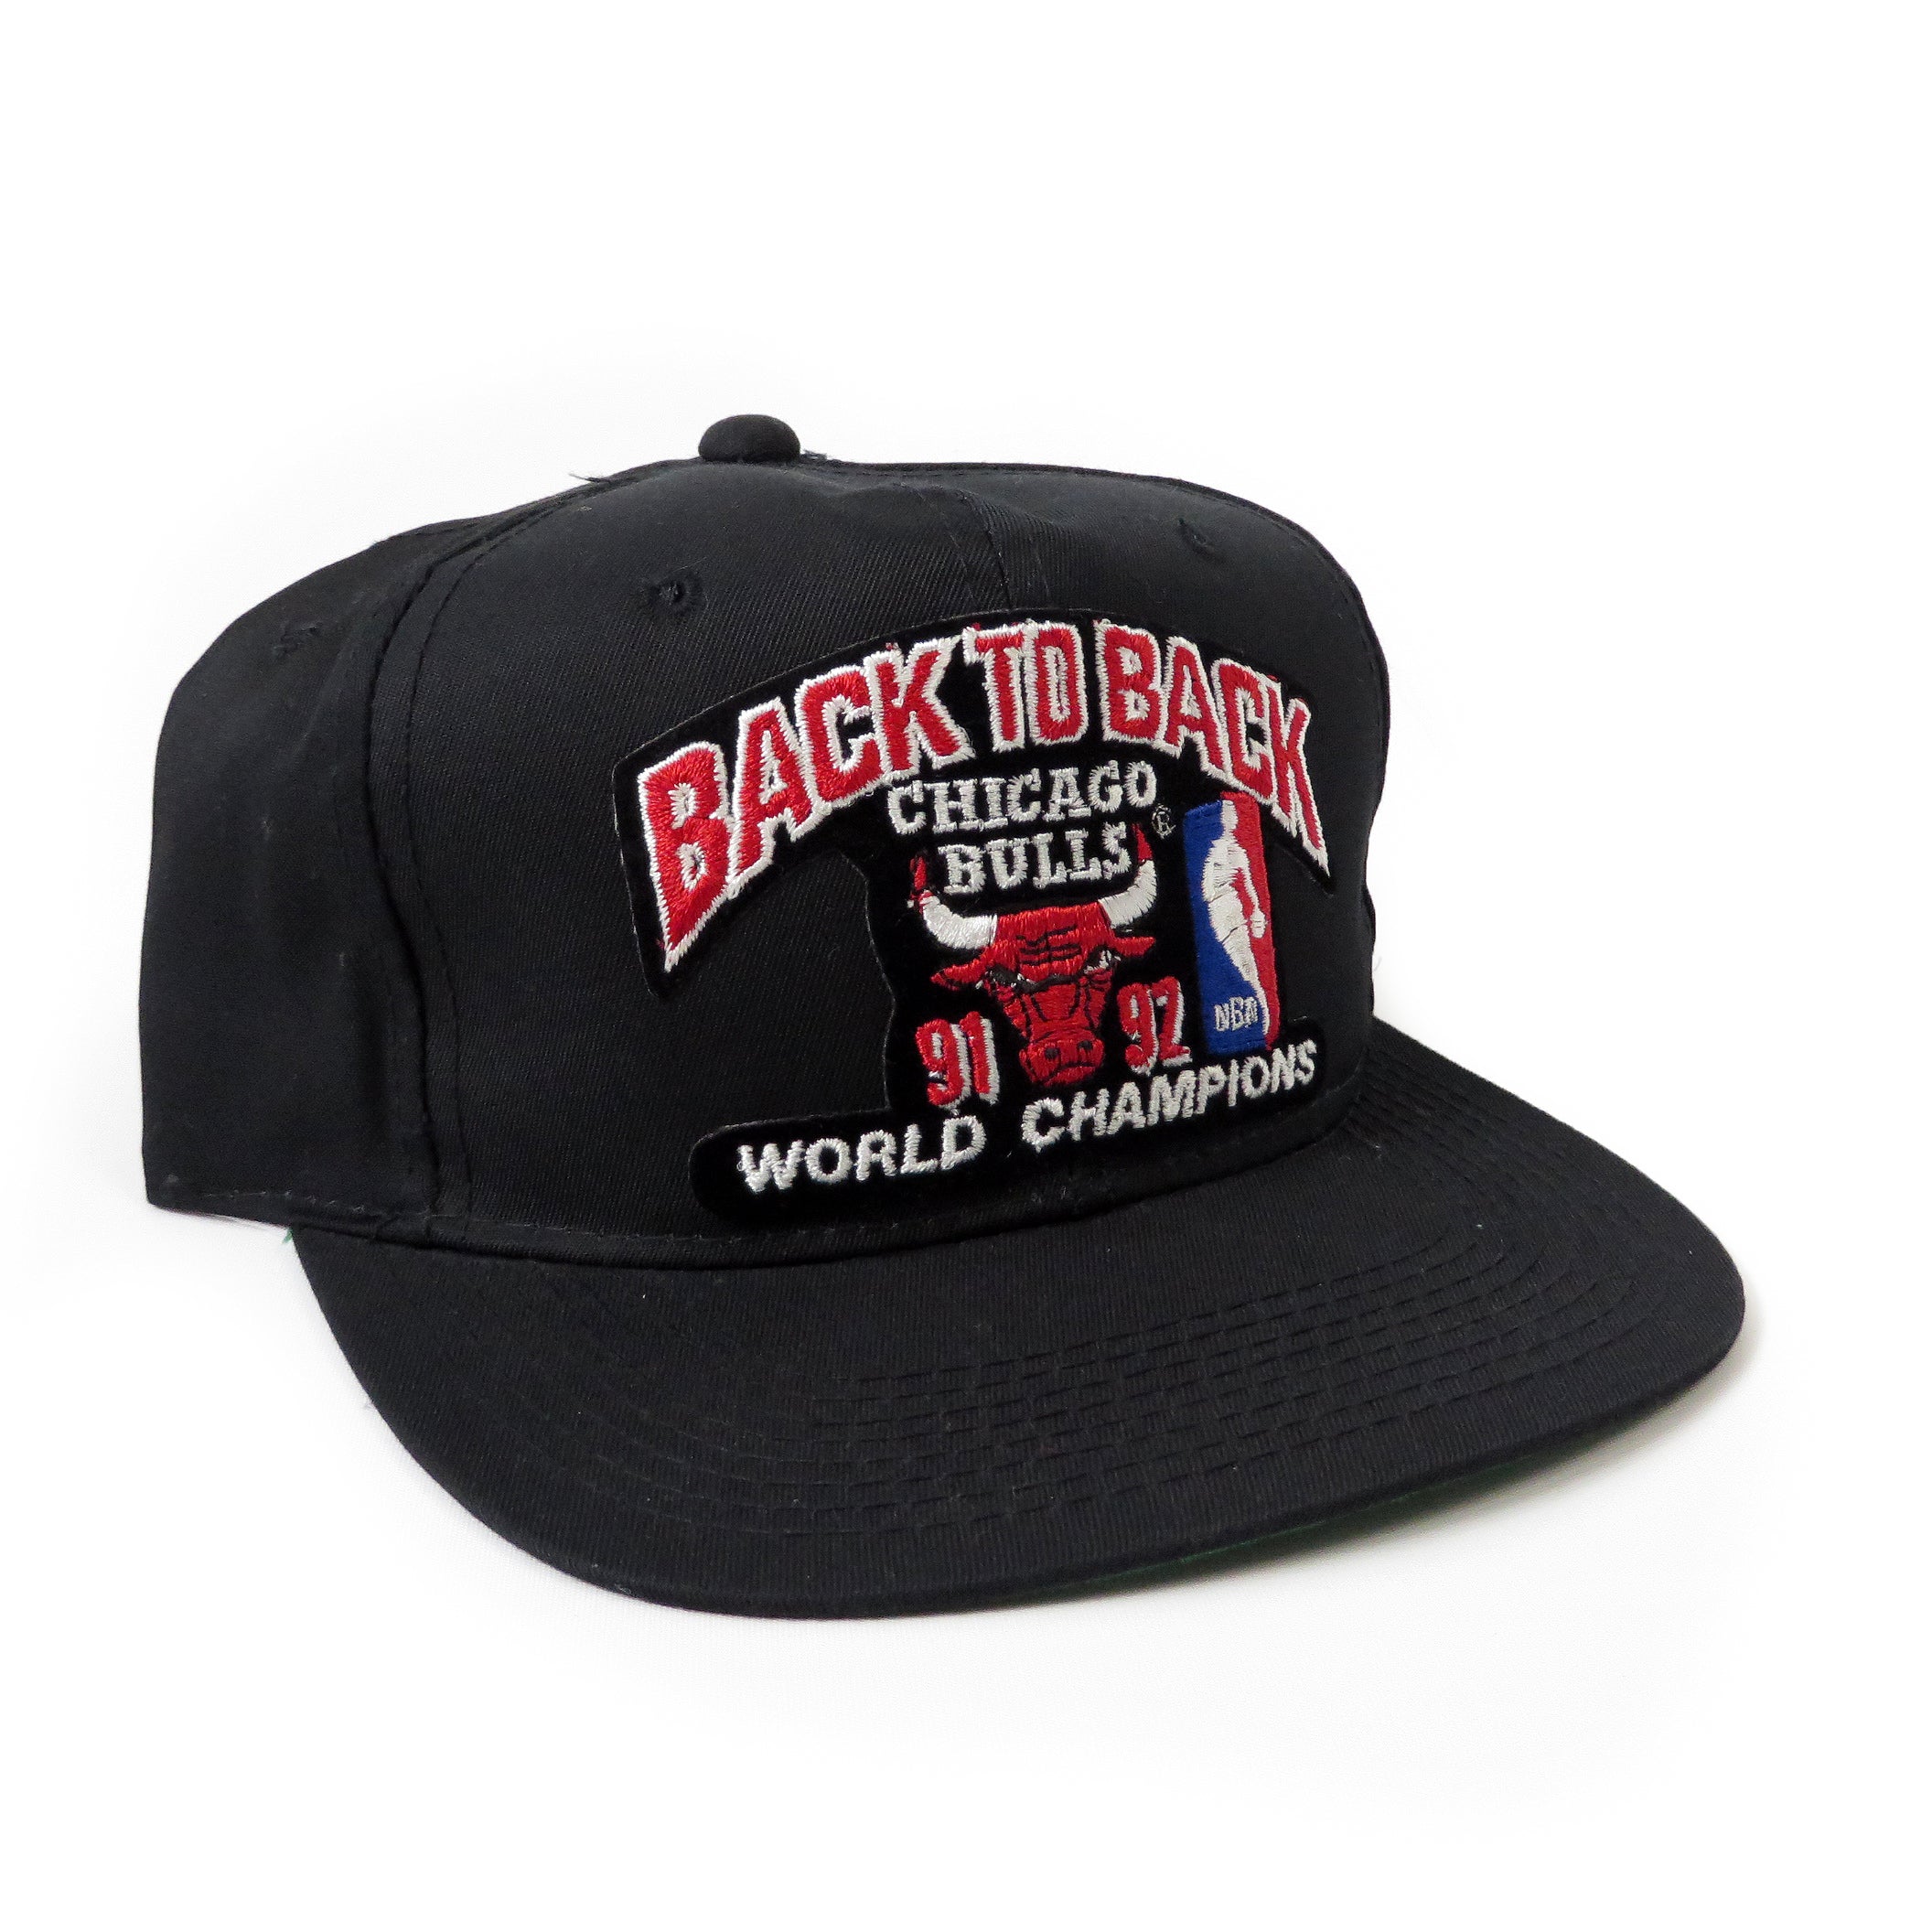 Vintage 1992 Back To Back Chicago Bulls Snapback Hat